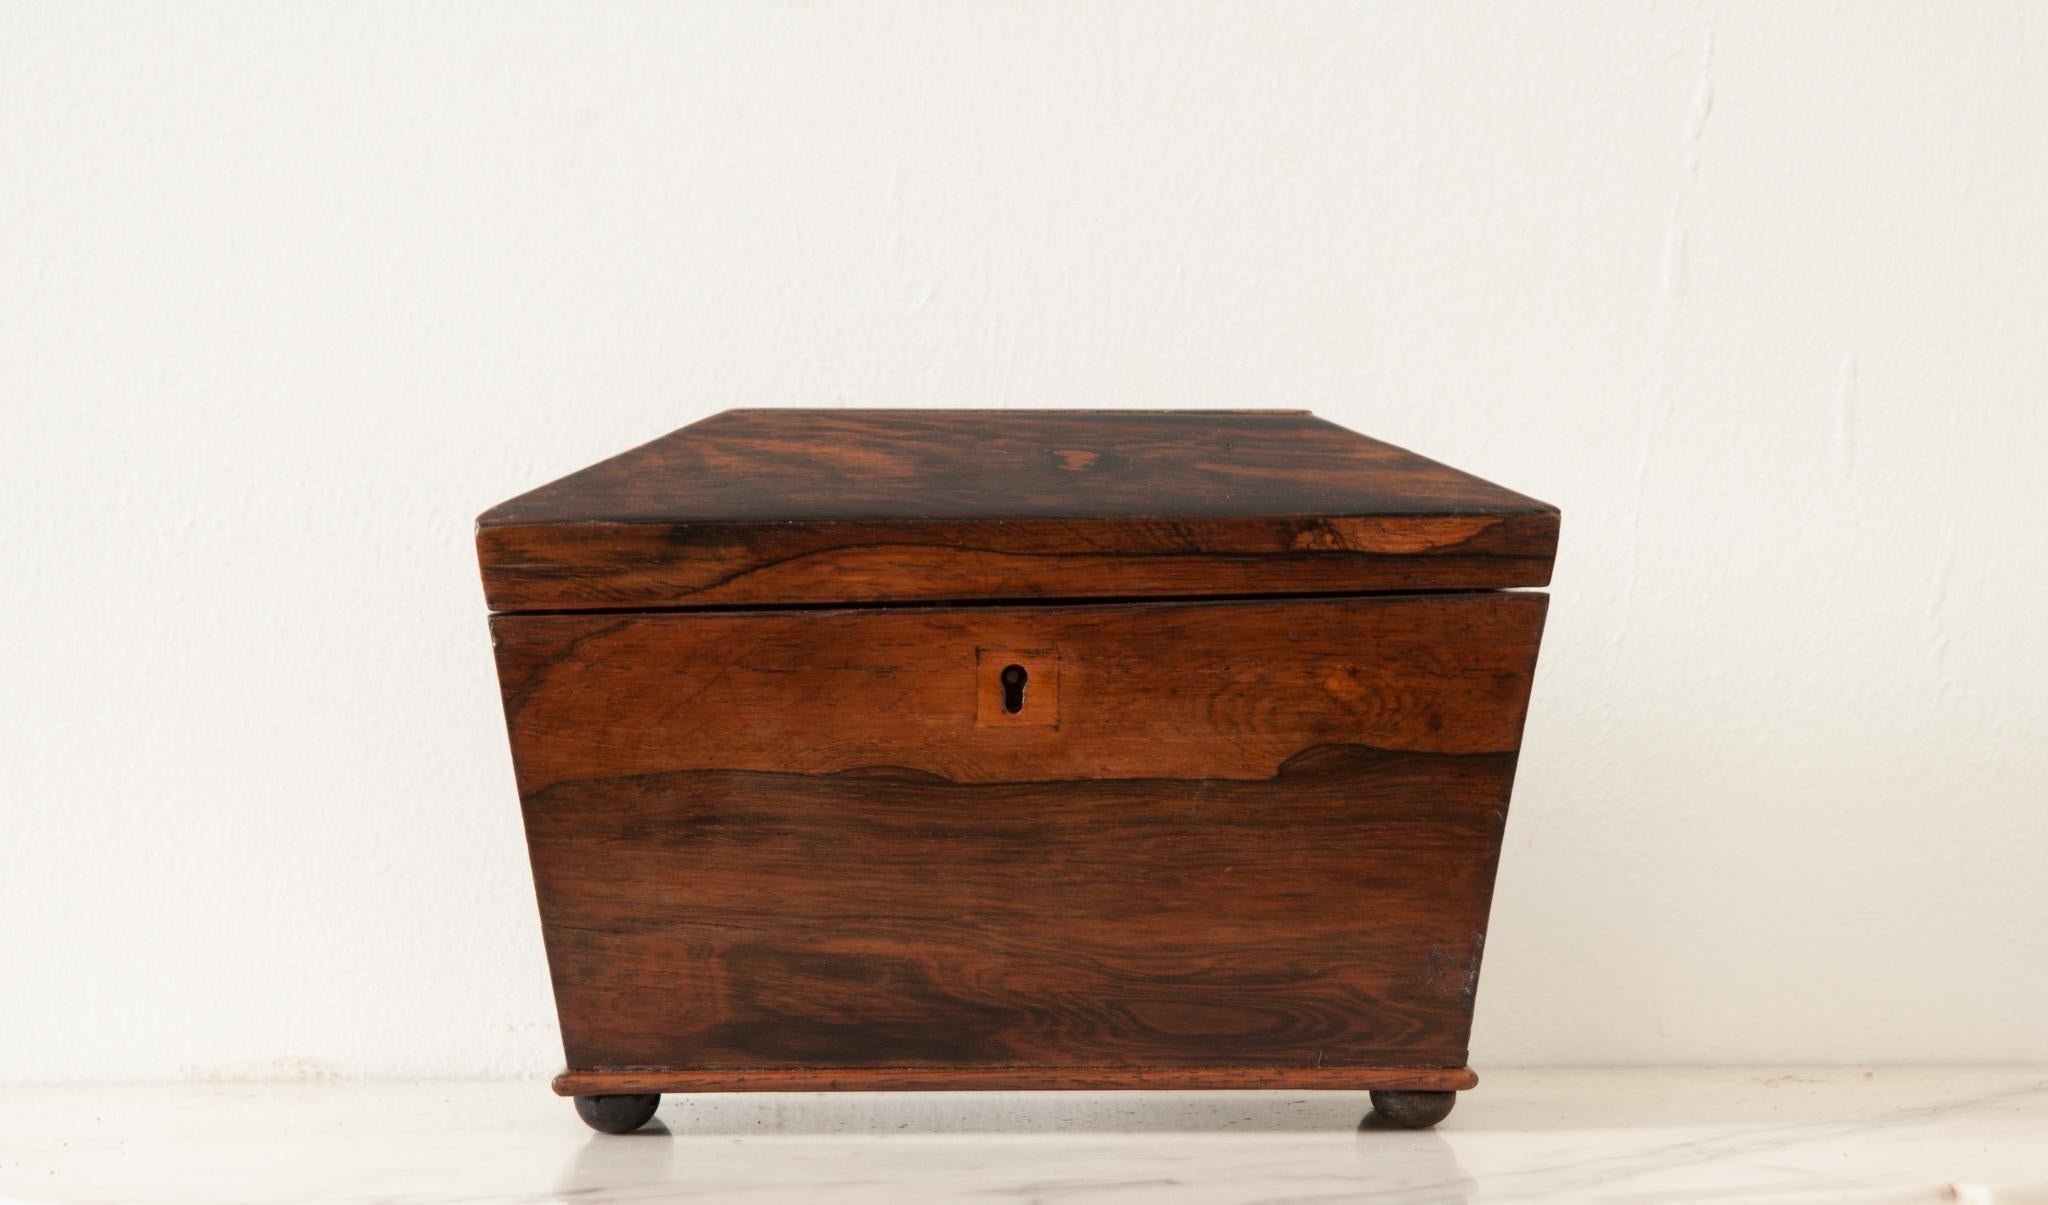 Petite boîte à thé en bois de rose anglaise du 19e siècle. Cette boîte possède un couvercle angulaire qui s'ouvre sur un intérieur aménagé. Il y a deux compartiments avec des couvercles amovibles utilisés autrefois pour conserver les thés en